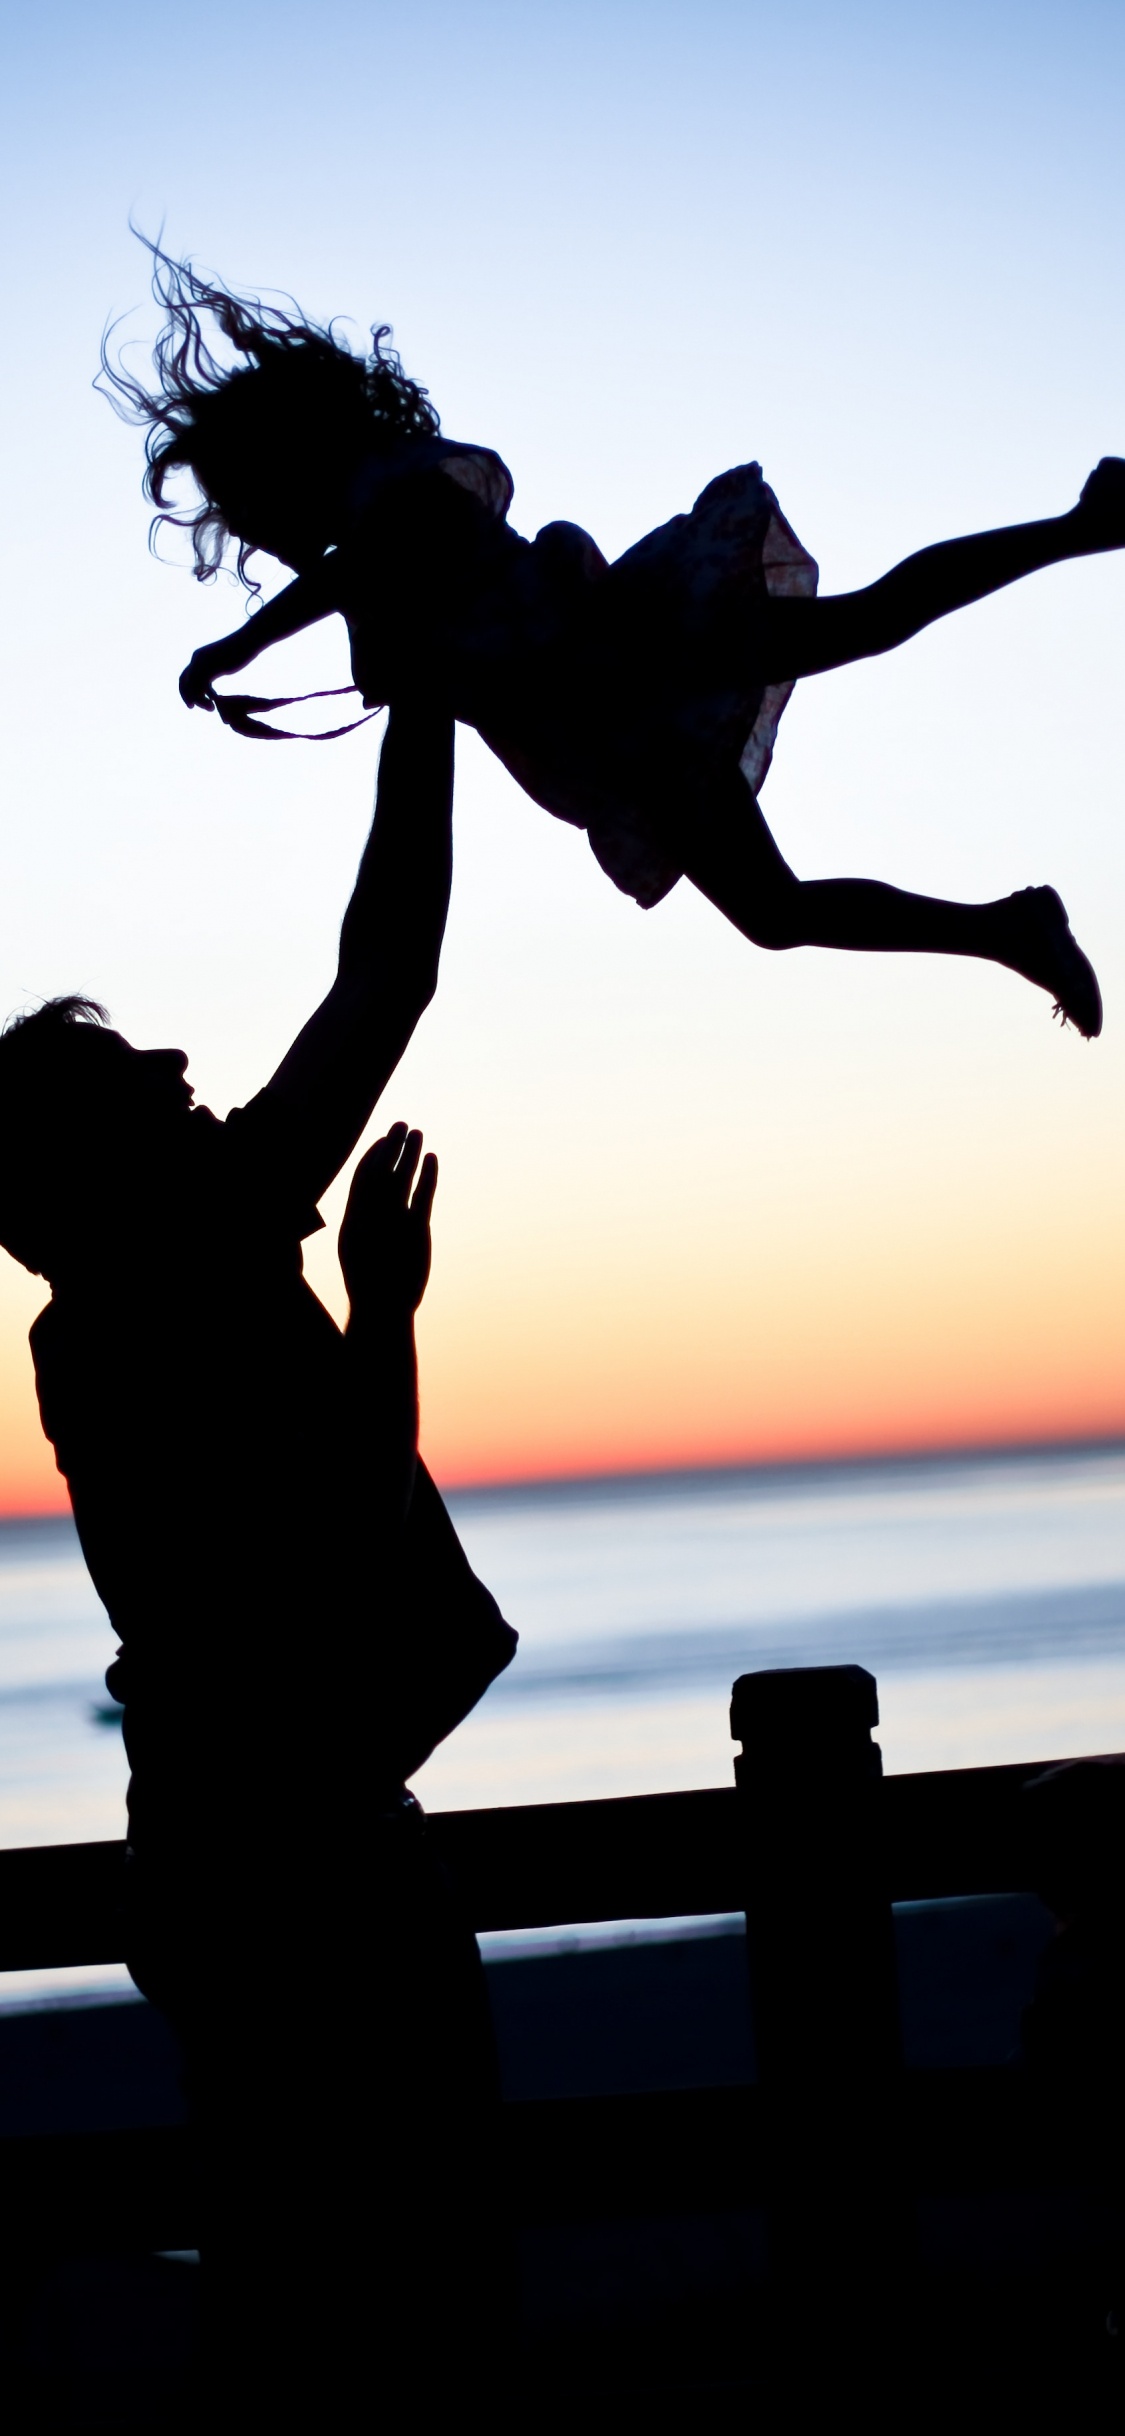 爸爸, 女儿, 家庭, 人们在自然界, 跳跃 壁纸 1125x2436 允许